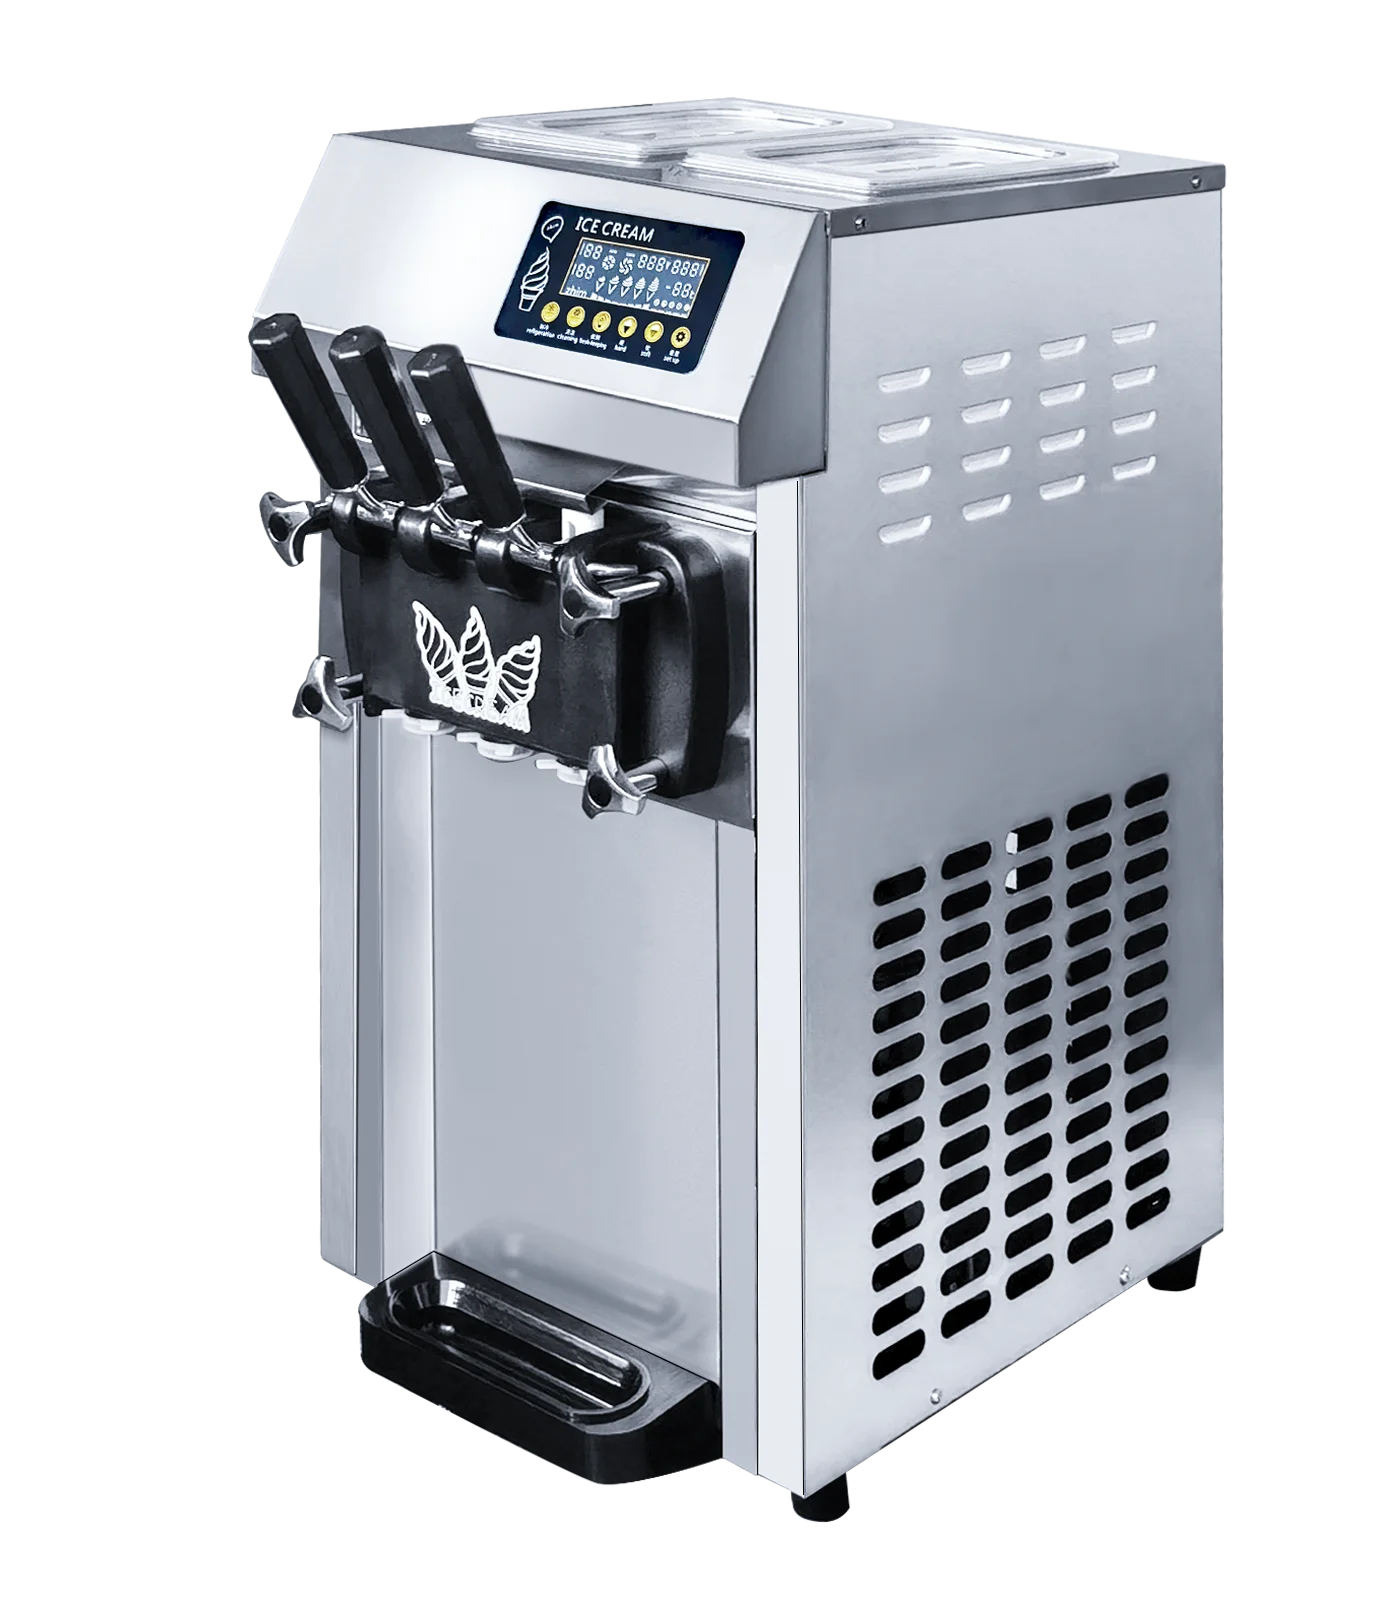 

Коммерческая электрическая настольная небольшая машина для мягкого мороженого, 18 л/ч, производитель 3 ароматы мороженого, с функцией сохран...